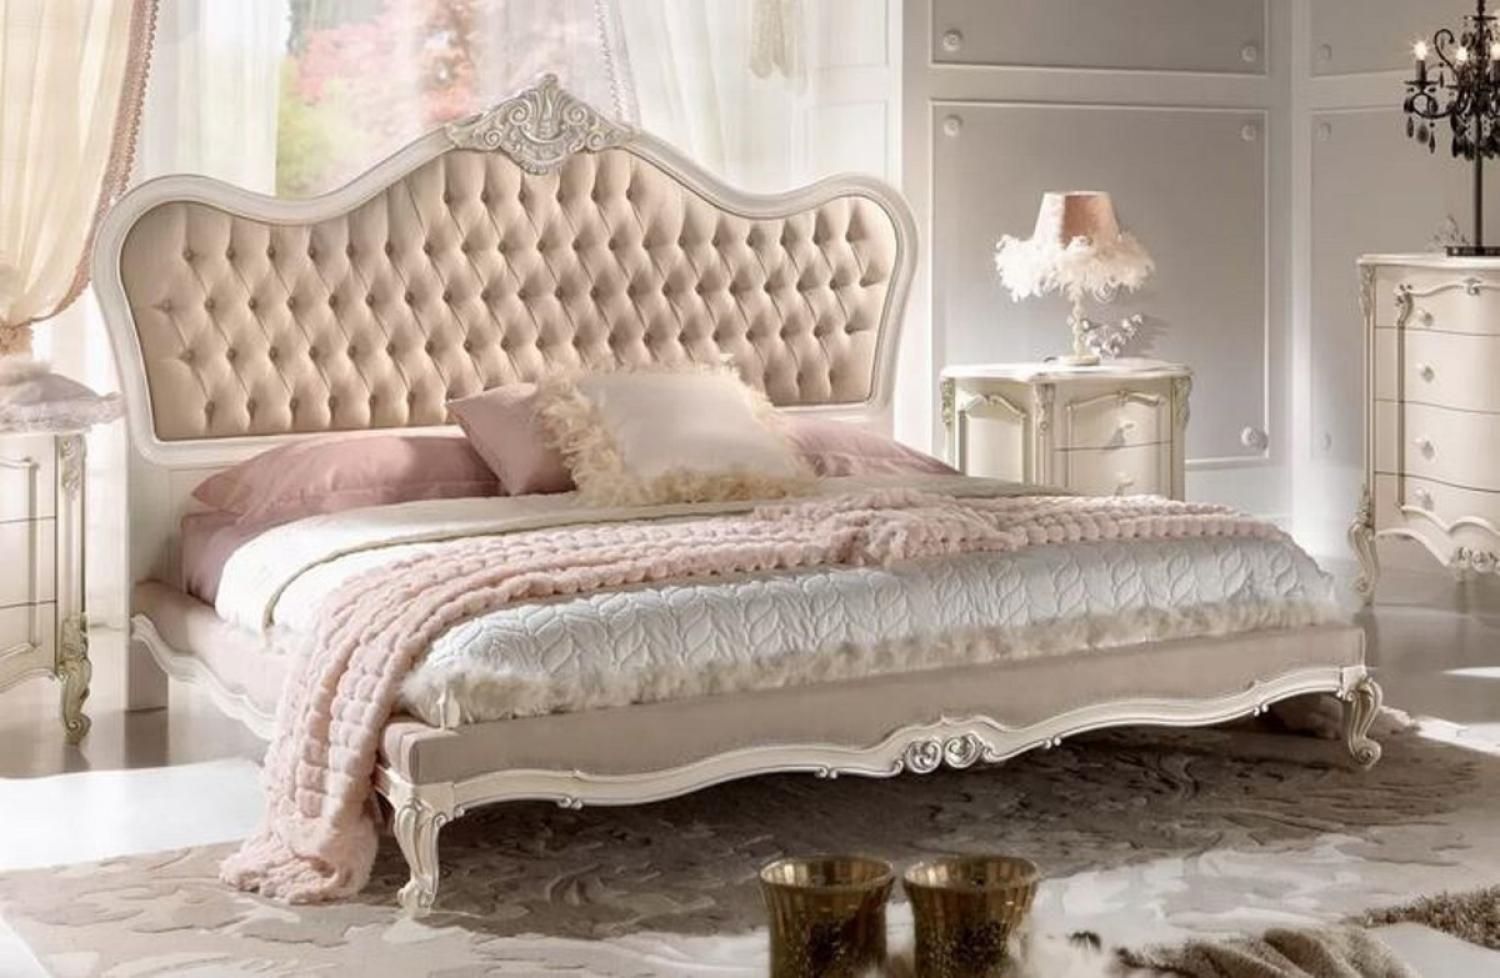 Casa Padrino Luxus Barock Doppelbett Beige / Grau / Weiß / Silber - Prunkvolles Massivholz Bett - Barock Schlafzimmer Möbel - Luxus Qualität - Made in Italy Bild 1